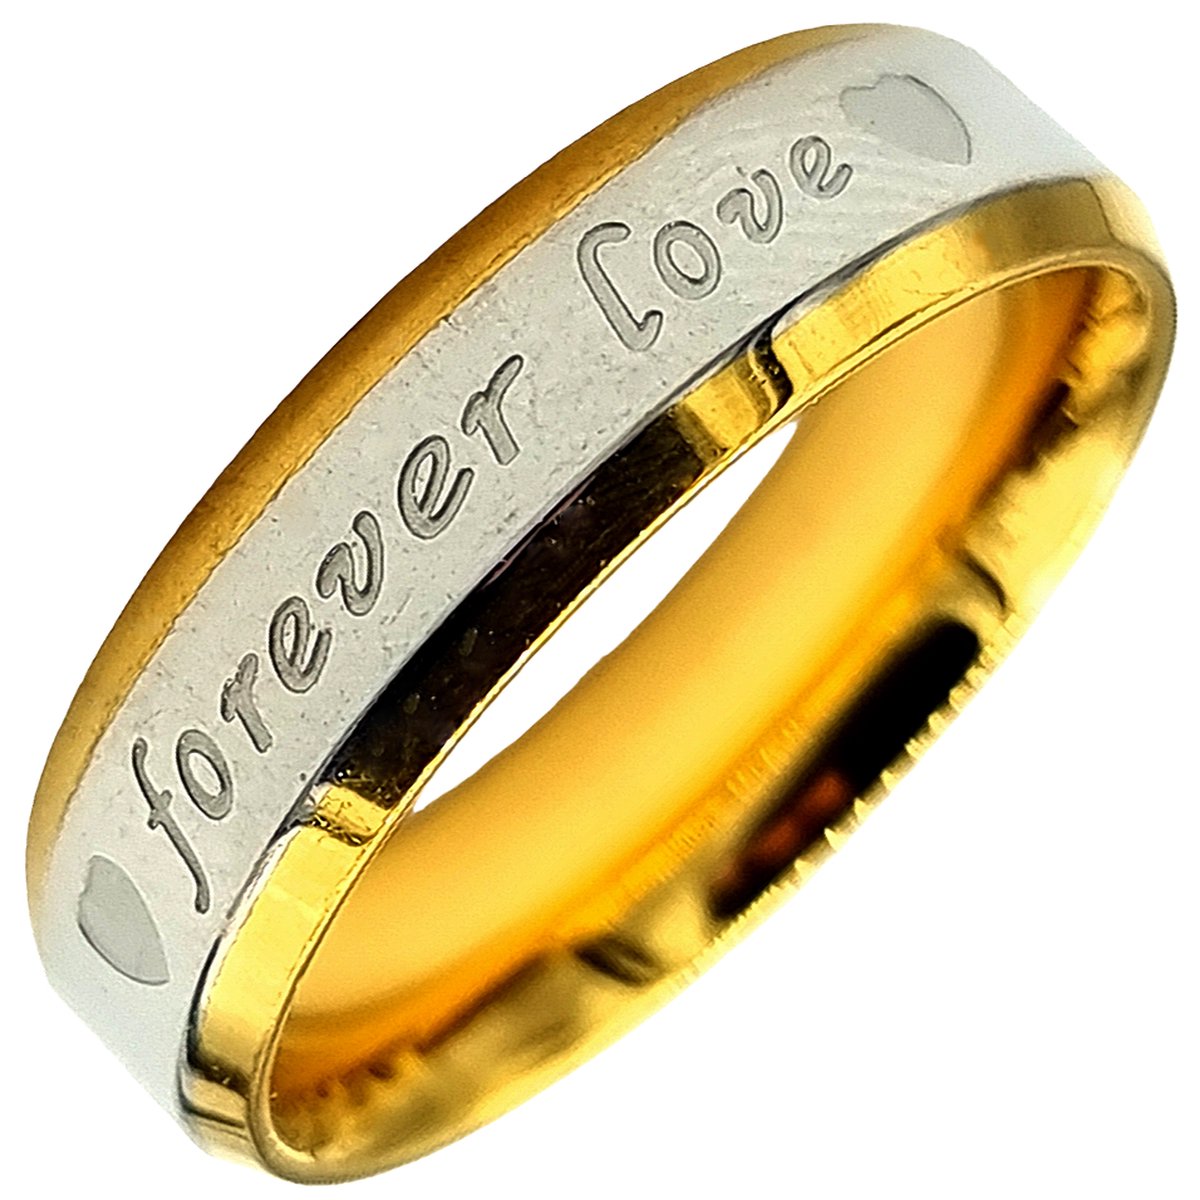 Rhylane – Stalen Ring Voor Man – Geschikt Voor Verloving Of Vriendschap – Staal In Kleur Zilver En Goud – 20 mm / Maat 63